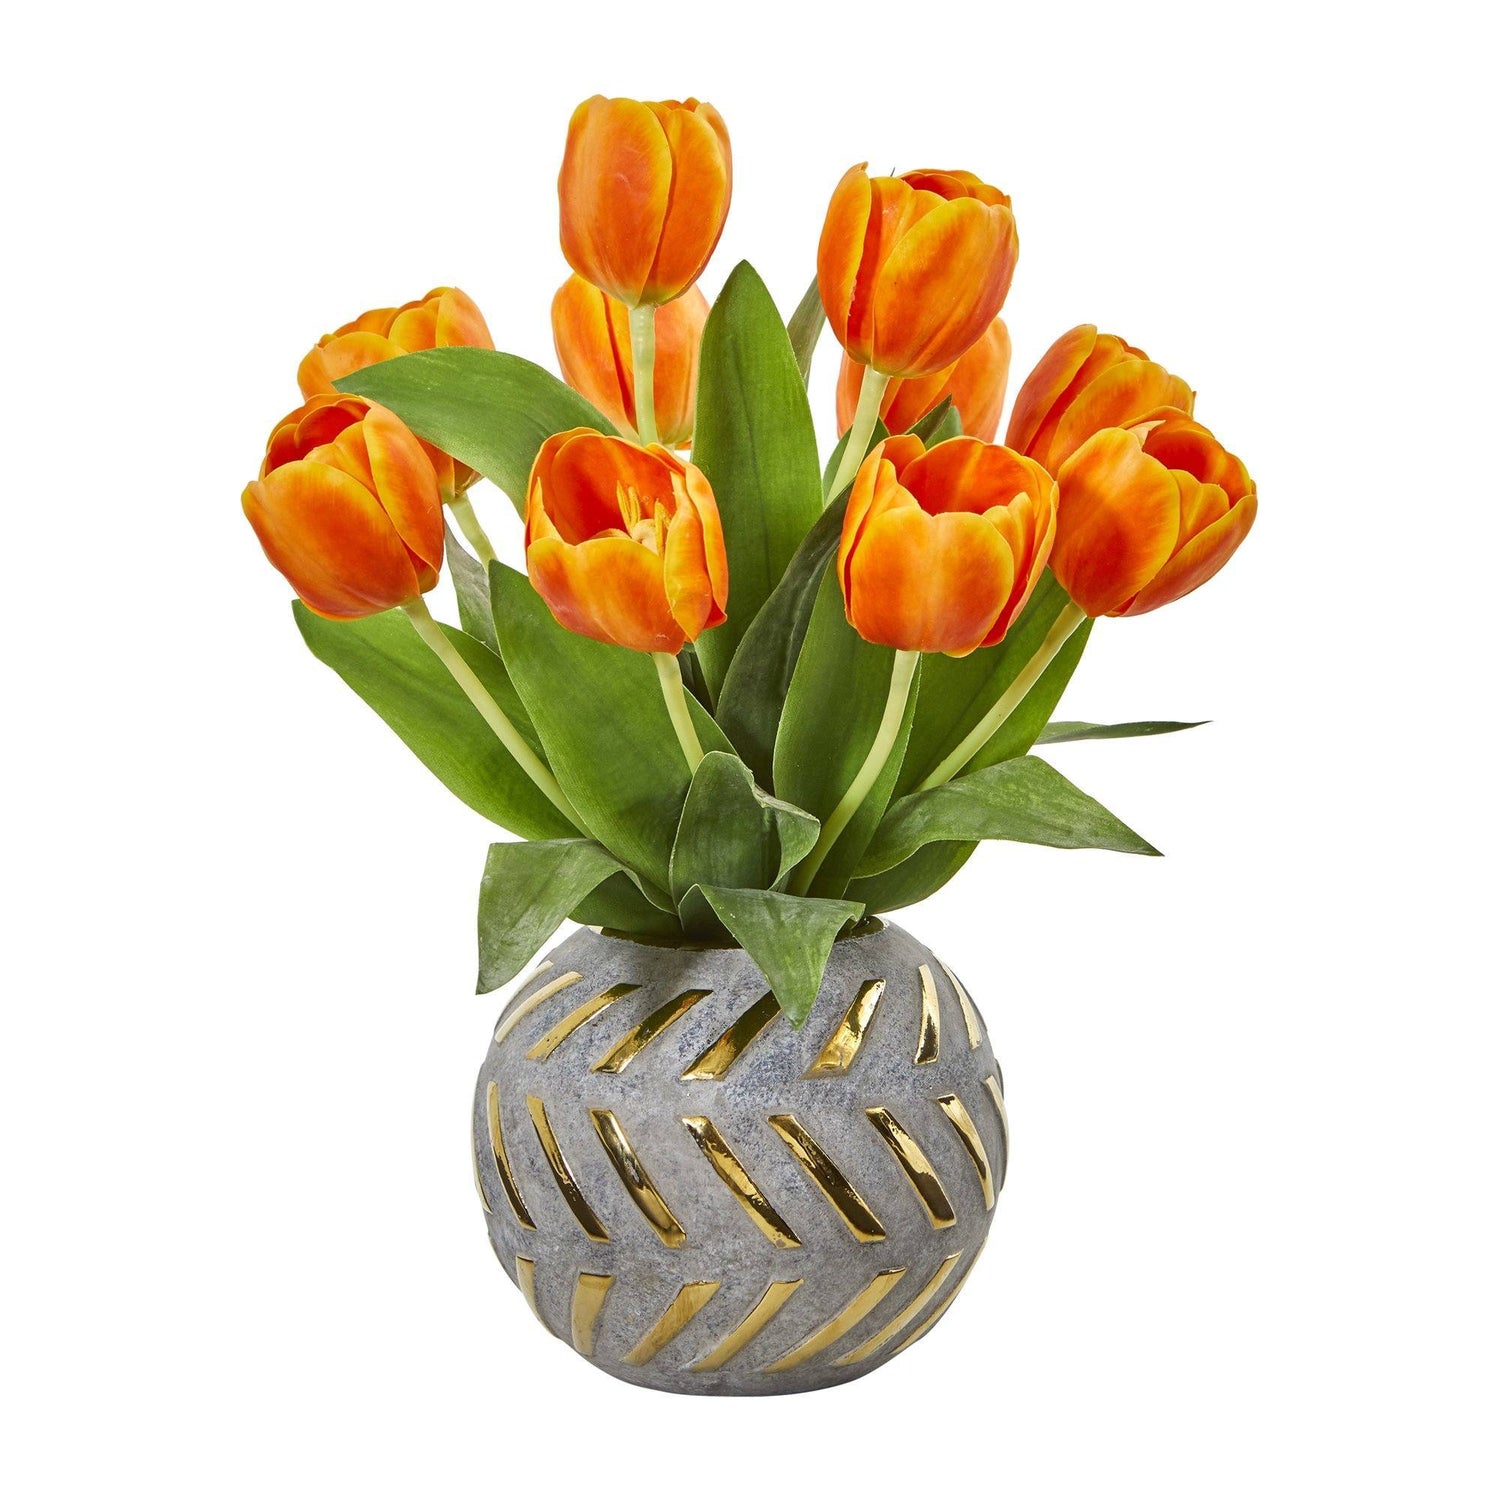 15” Tulip Artificial Arrangement in Decorative Vase